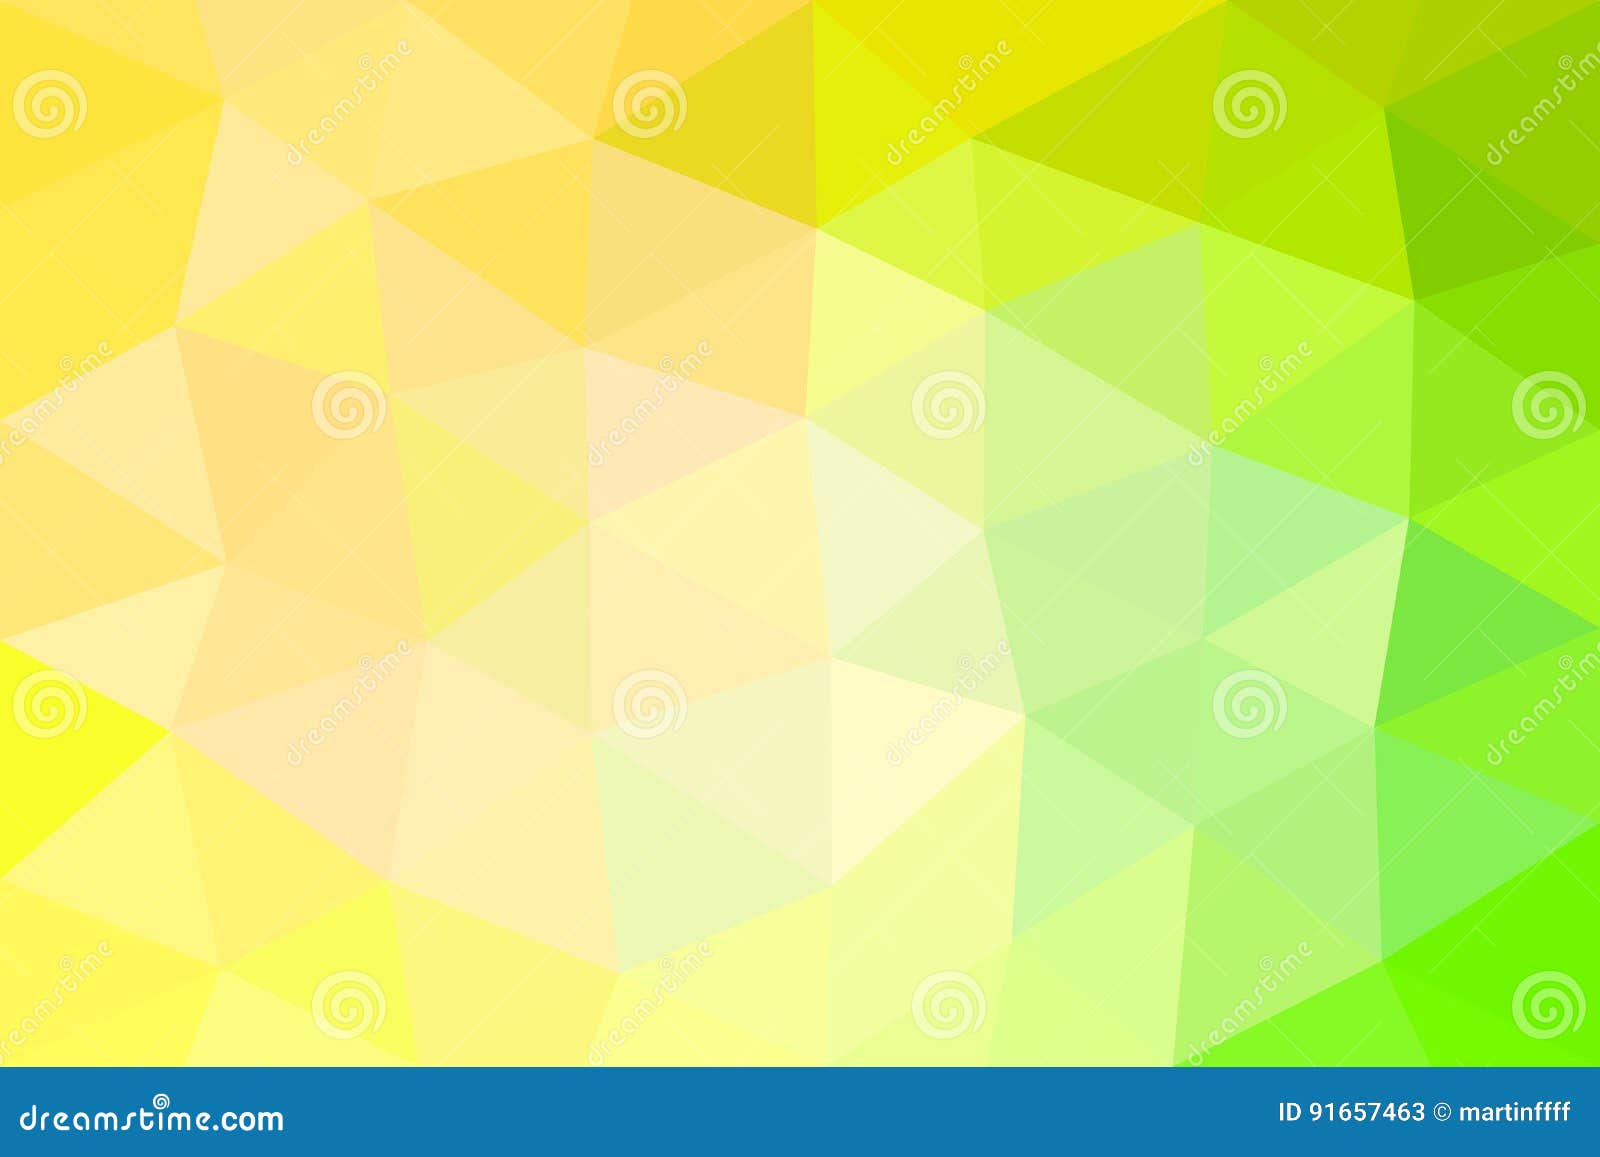 Bạn là người yêu thích những bức tranh vector với các hình tam giác độc đáo? Hãy xem nền hình tam giác vector tuyệt đẹp này, với sự pha trộn tinh tế của các màu sắc thêm phần sống động và hấp dẫn.